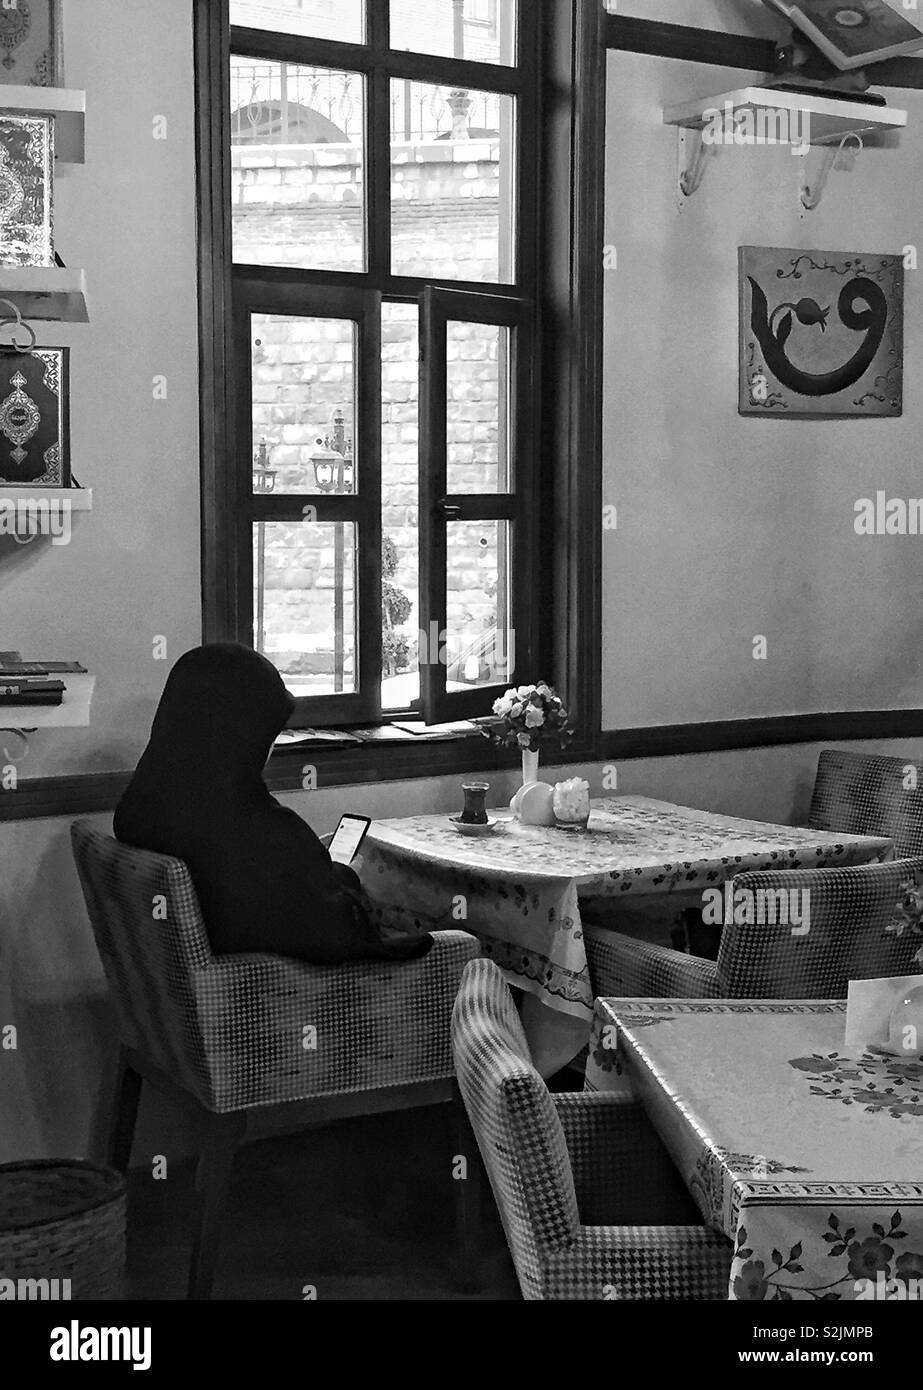 Muslimische Frau in Schwarz mit Smartphone in ihrer Hand im Cafe Tabelle in Ankara, Türkei gekleidet Stockfoto